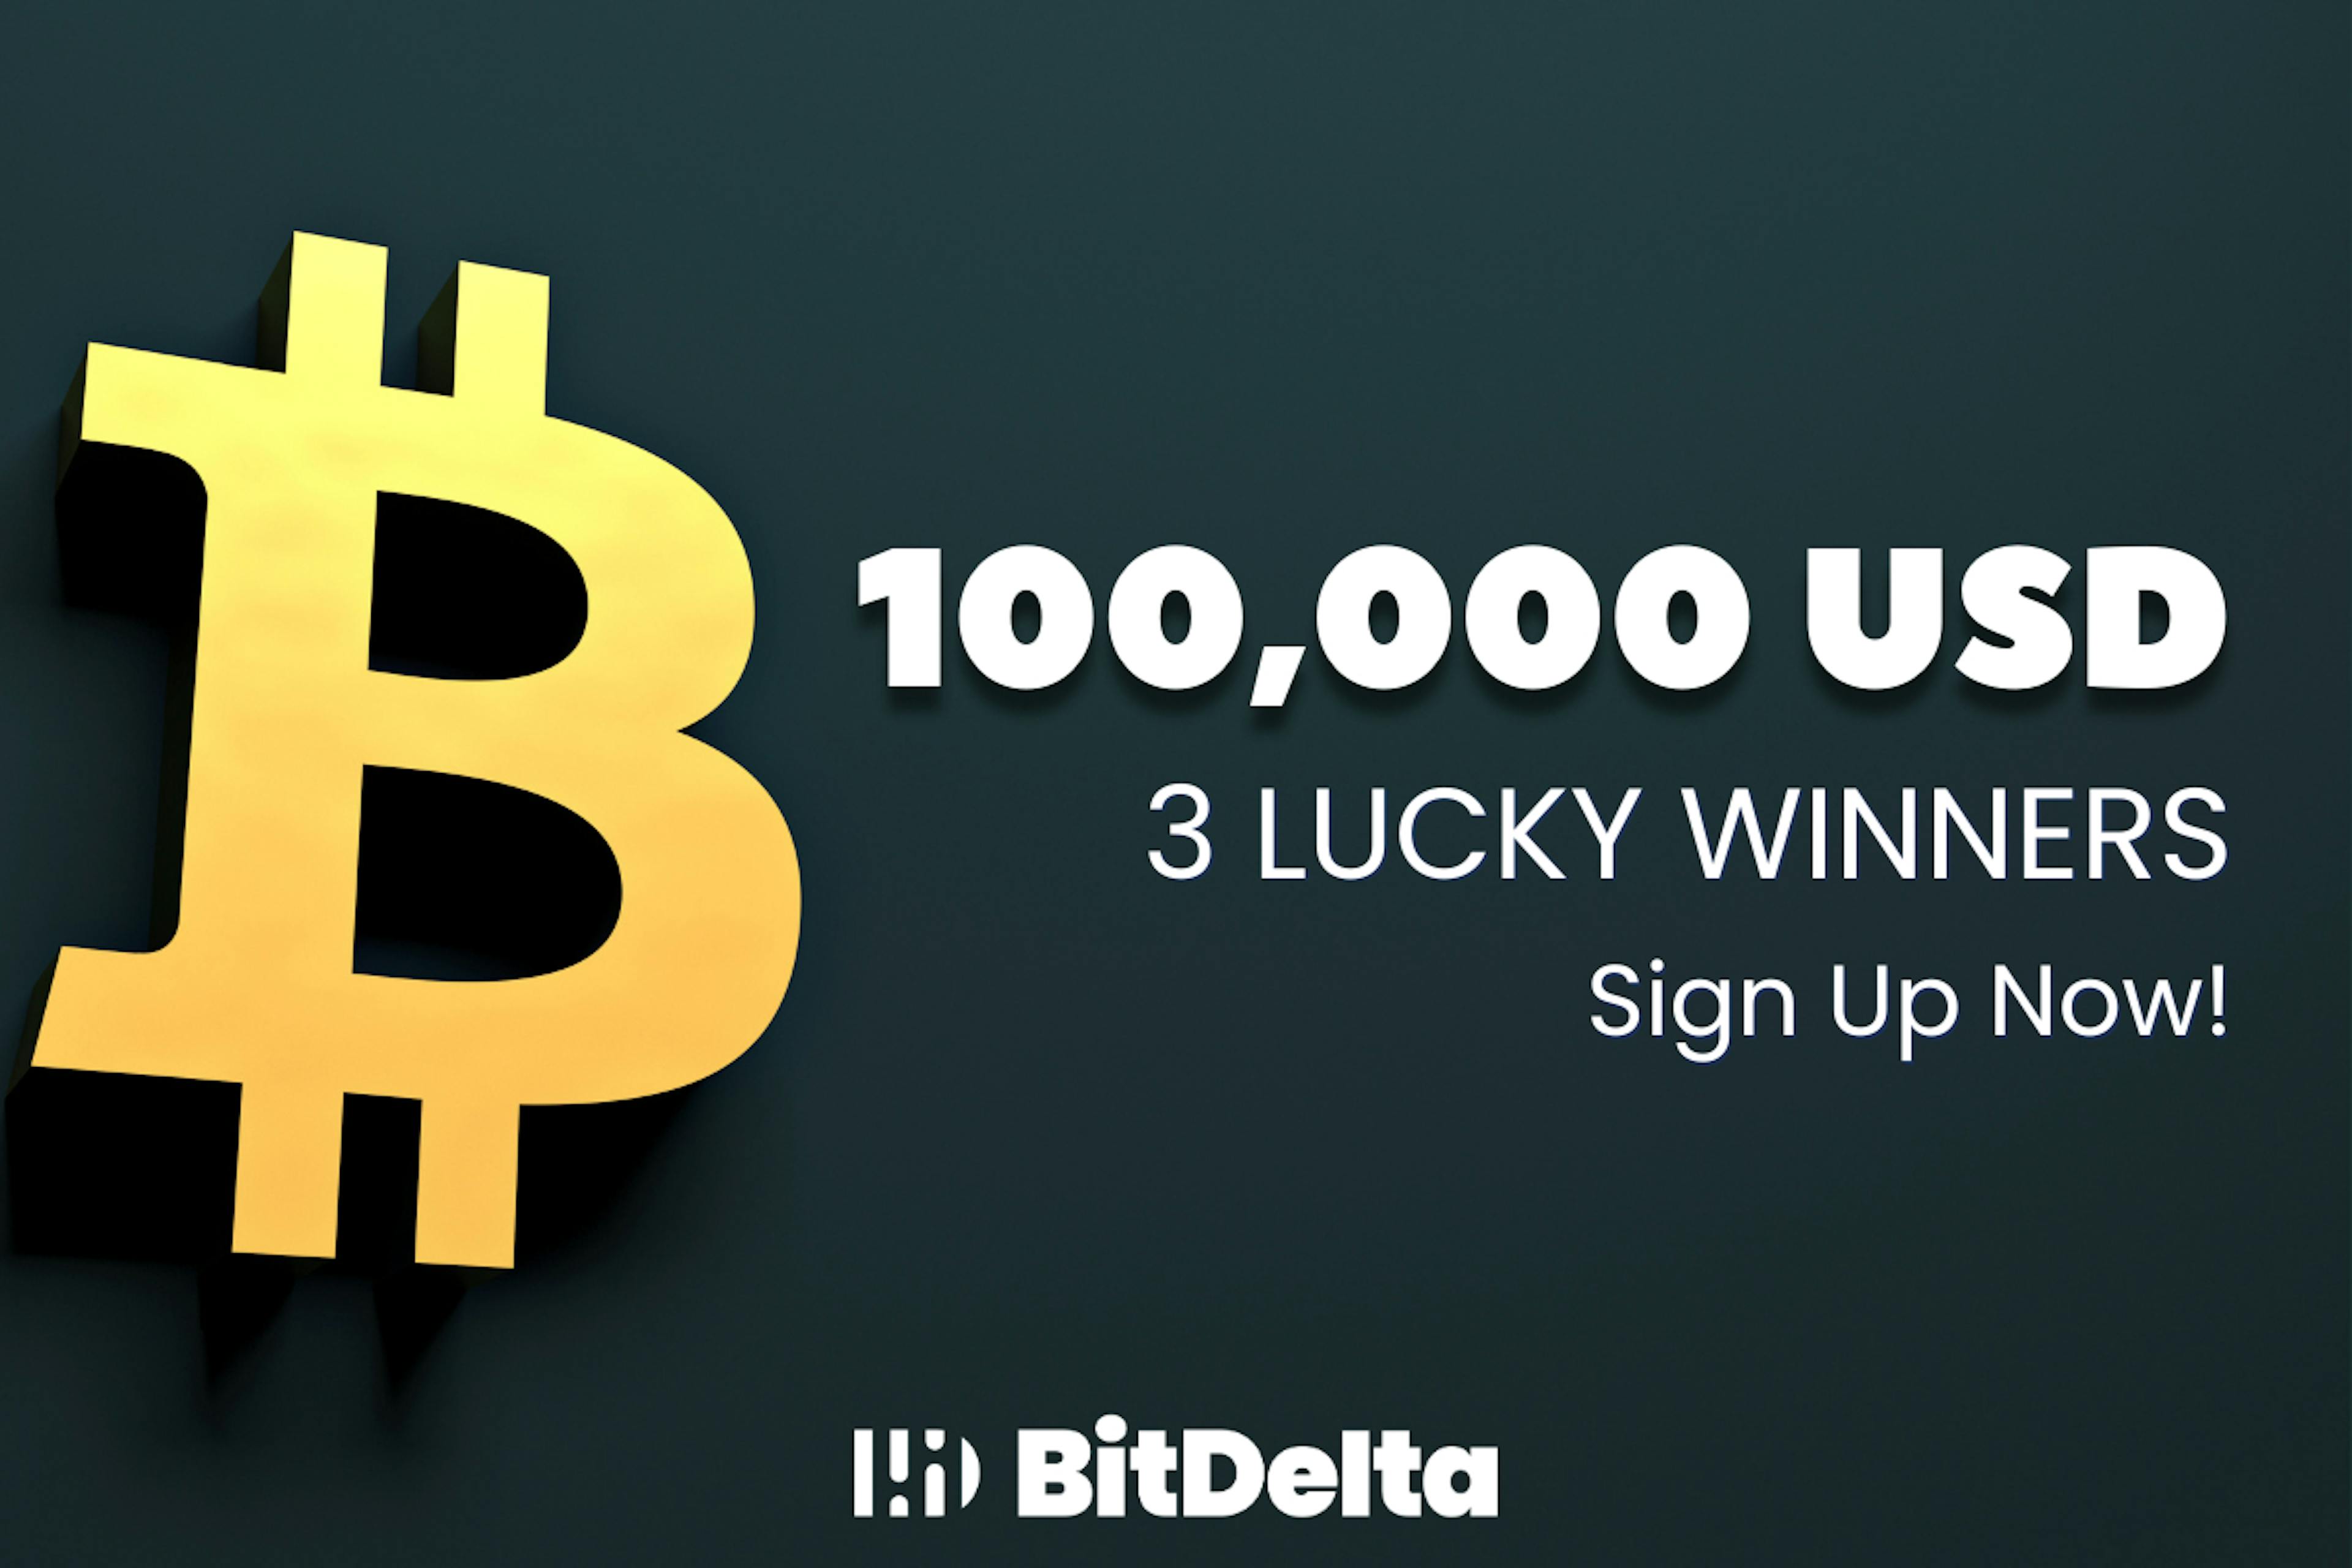 featured image - Tente ganhar sua parte de US$ 100.000 com o Bitcoin Halving Giveaway da BitDelta